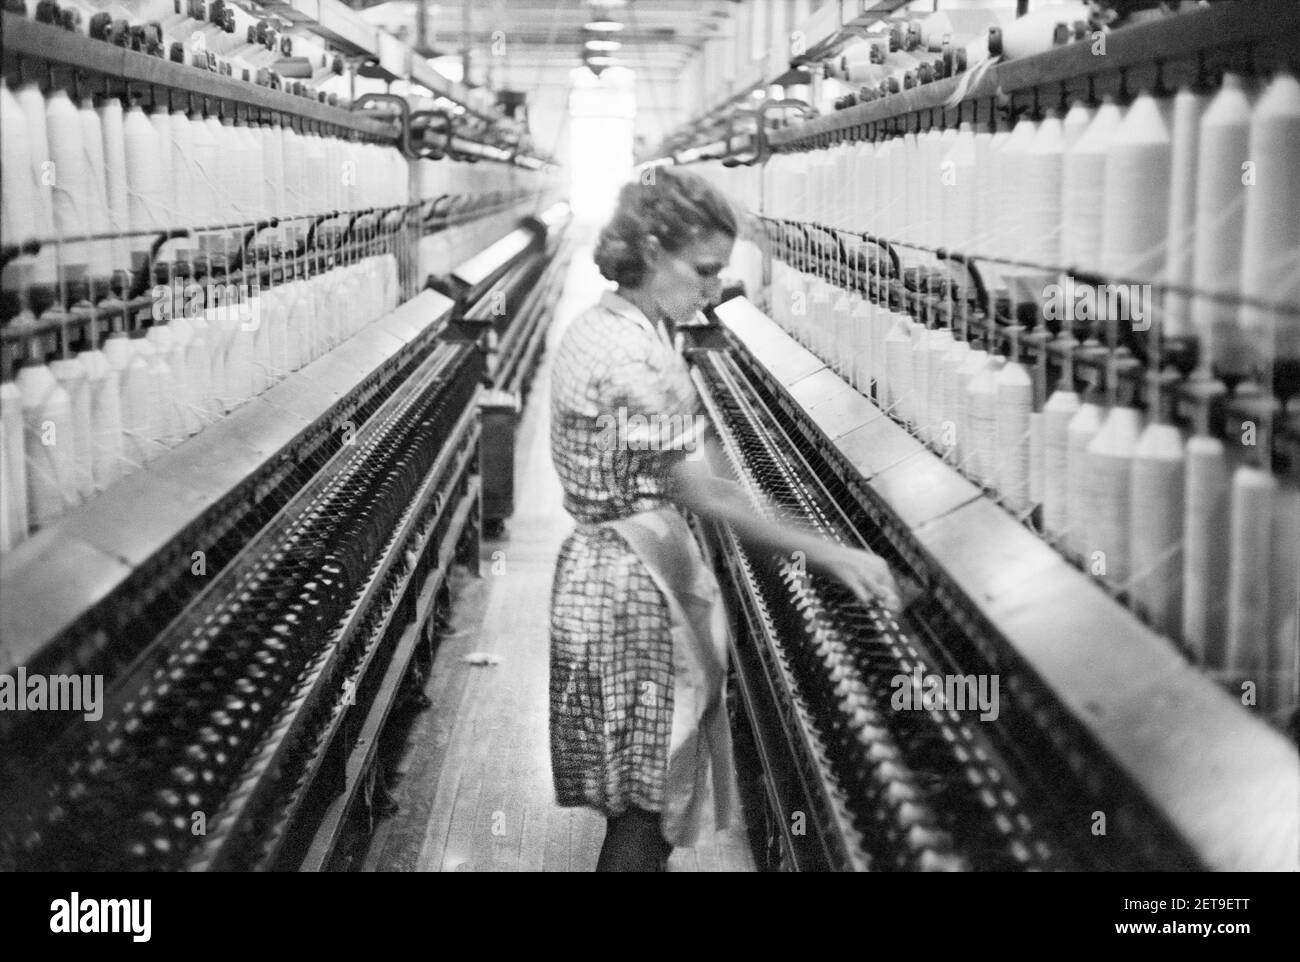 Femme travailleuse à l'usine de coton Mary-Leila, Greensboro, Géorgie, États-Unis, Jack Delano, U.S. Office of War information, octobre 1941 Banque D'Images